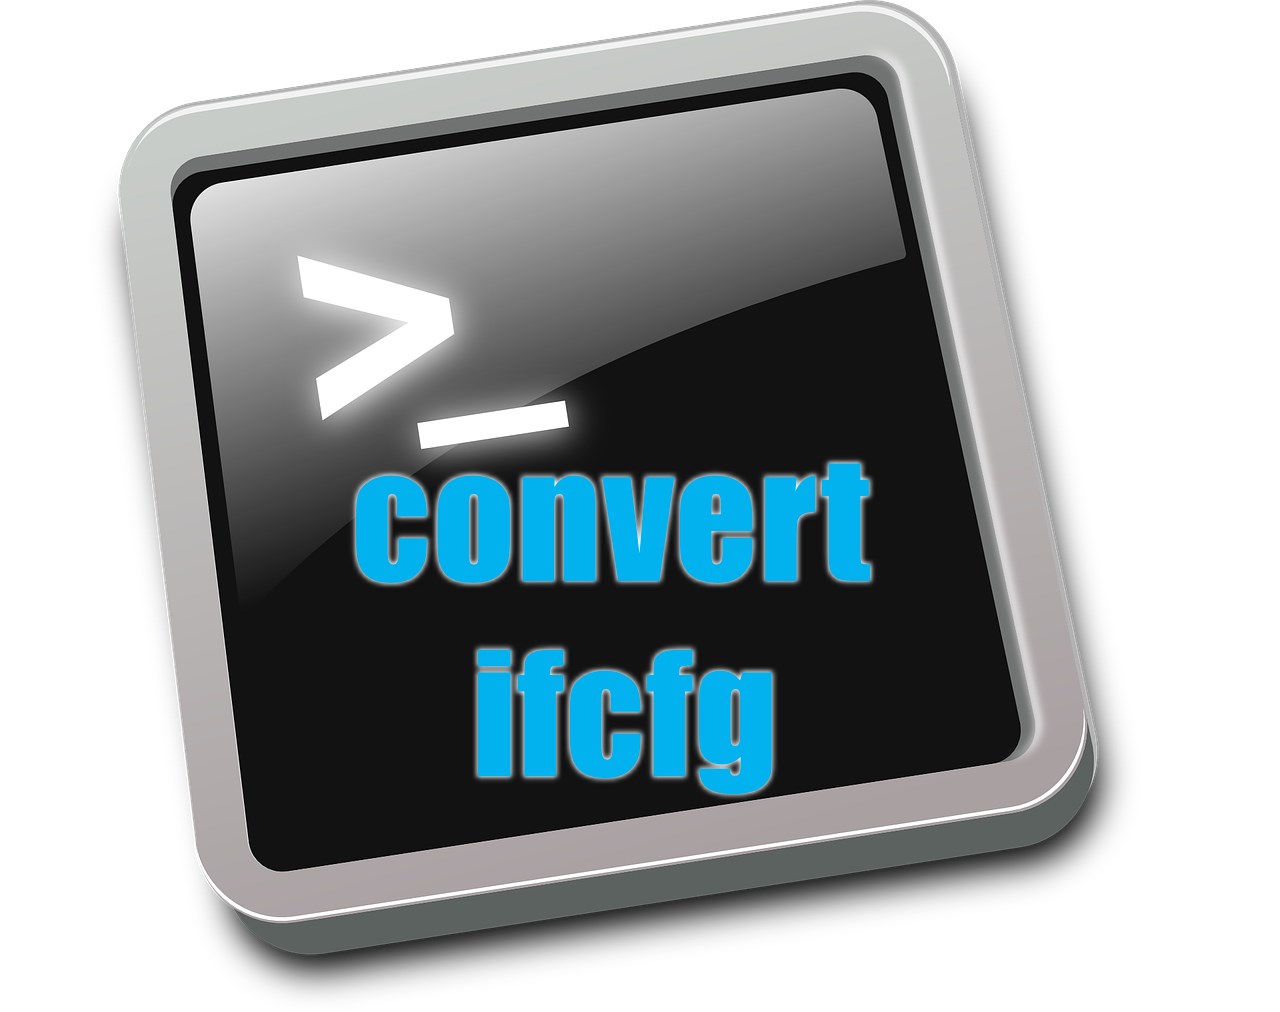 「ifcfgスタイル」でネットワーク設定されていたものを「キーファイル」の形式で設定内容を引き継いで変換(移行)する方法をお教えします。